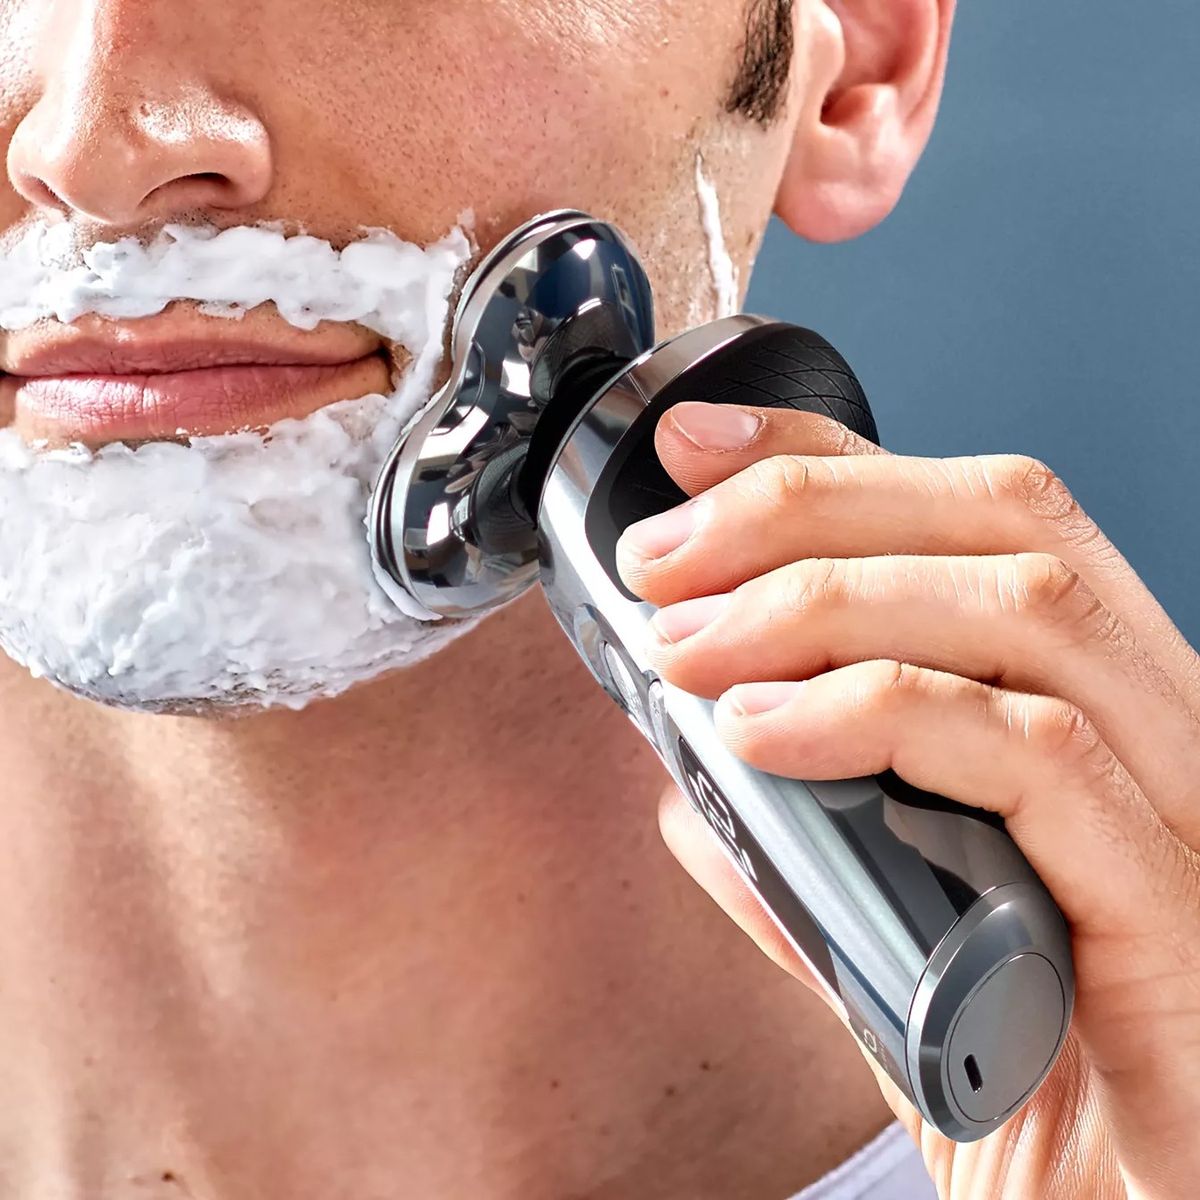 Las mejores afeitadoras corporales para hombre en relación calidad